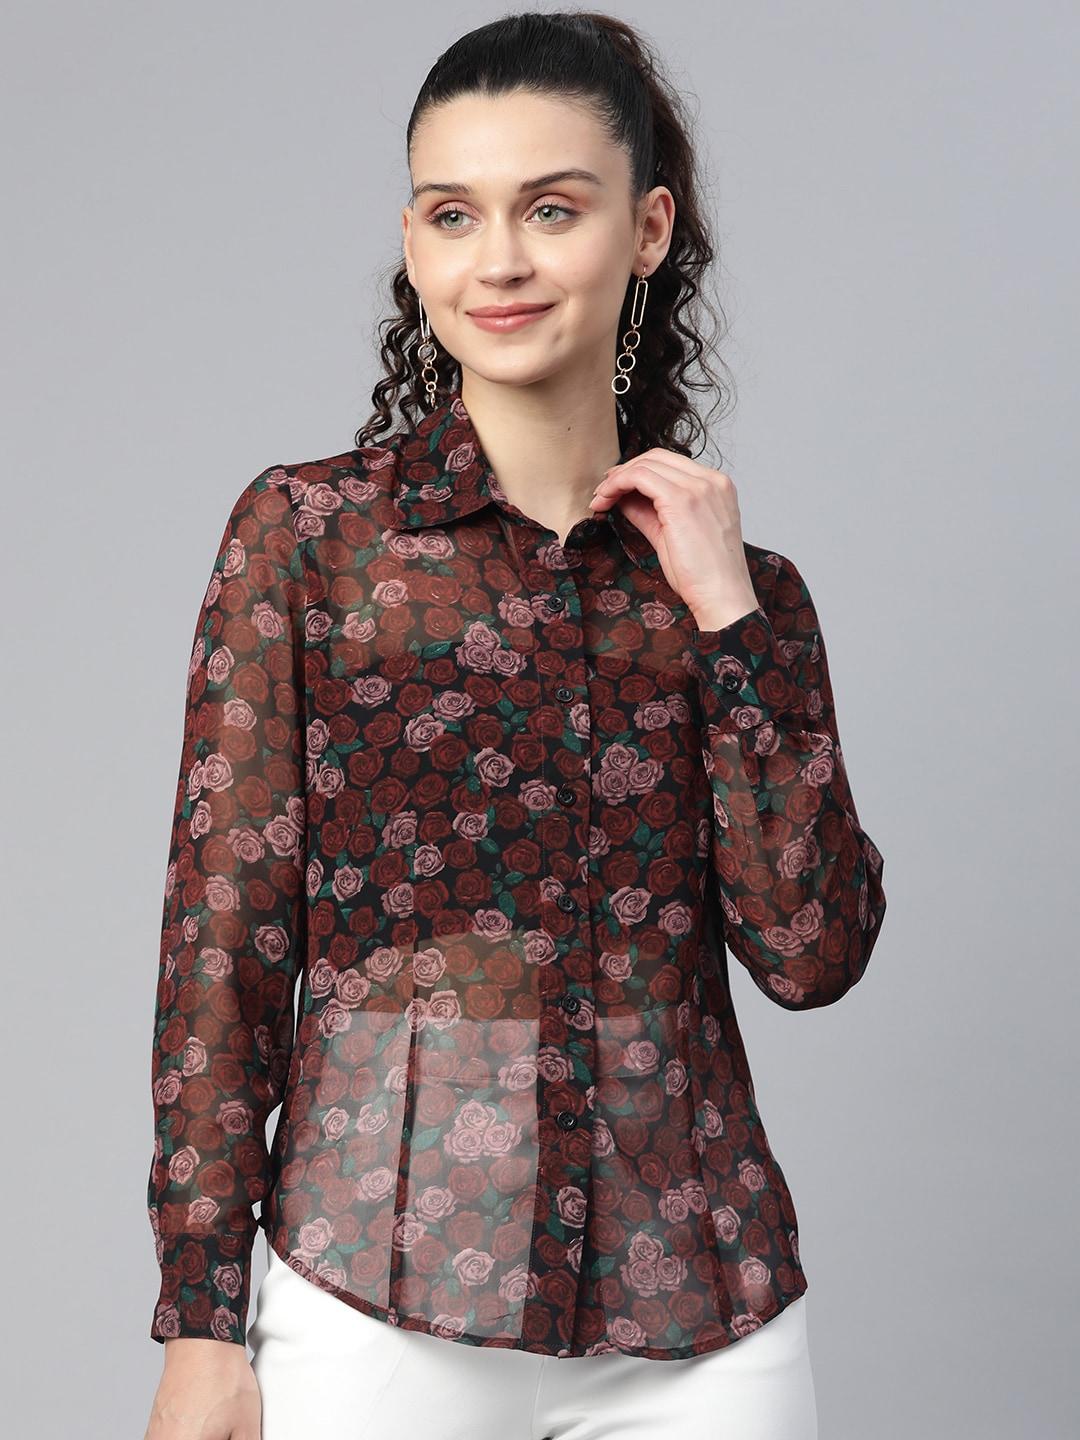 powersutra-women-maroon-comfort-floral-semi-sheer-printed-casual-shirt